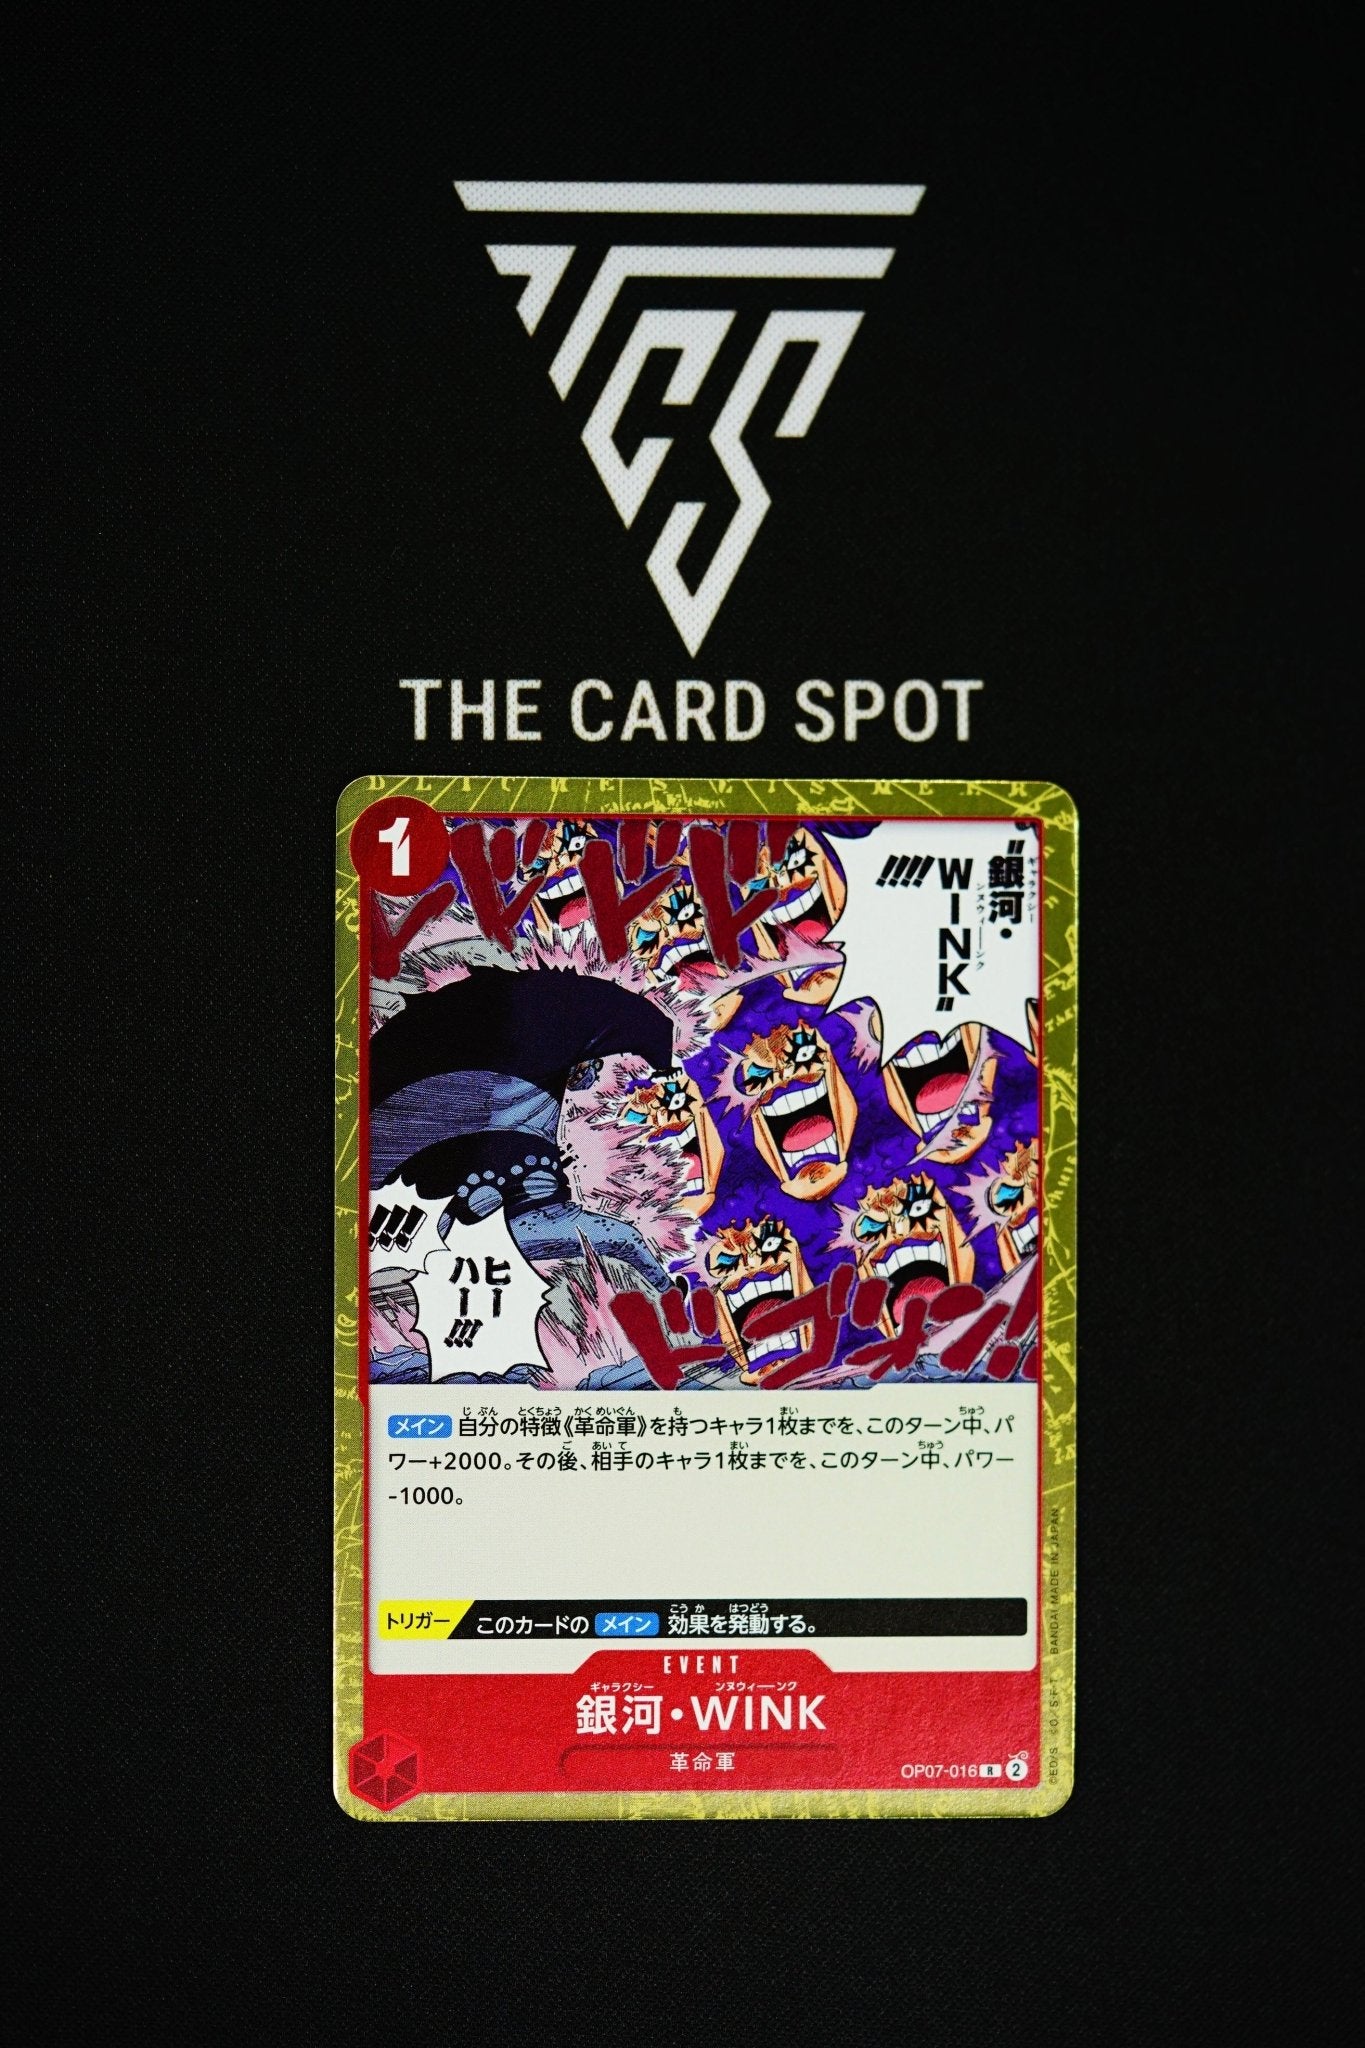 OP07-016 R Galaxy Wink - One Piece - THE CARD SPOT PTY LTD.One Piece CardsONE PIECE